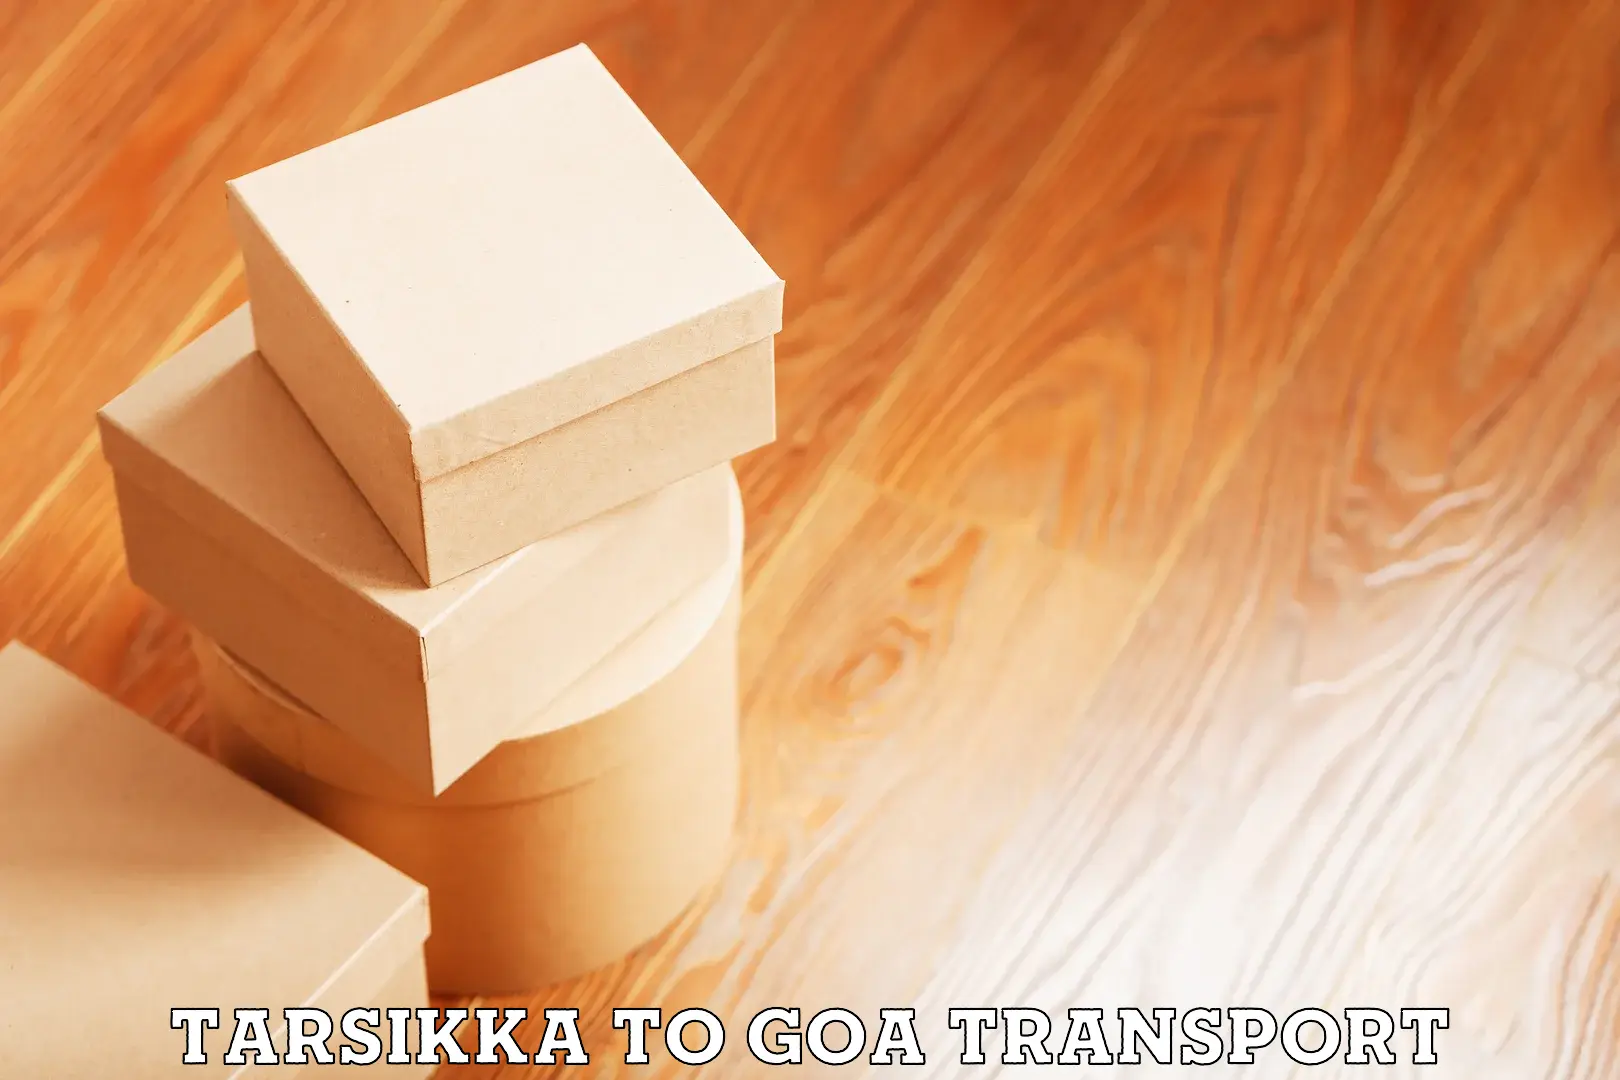 Daily transport service Tarsikka to Margao